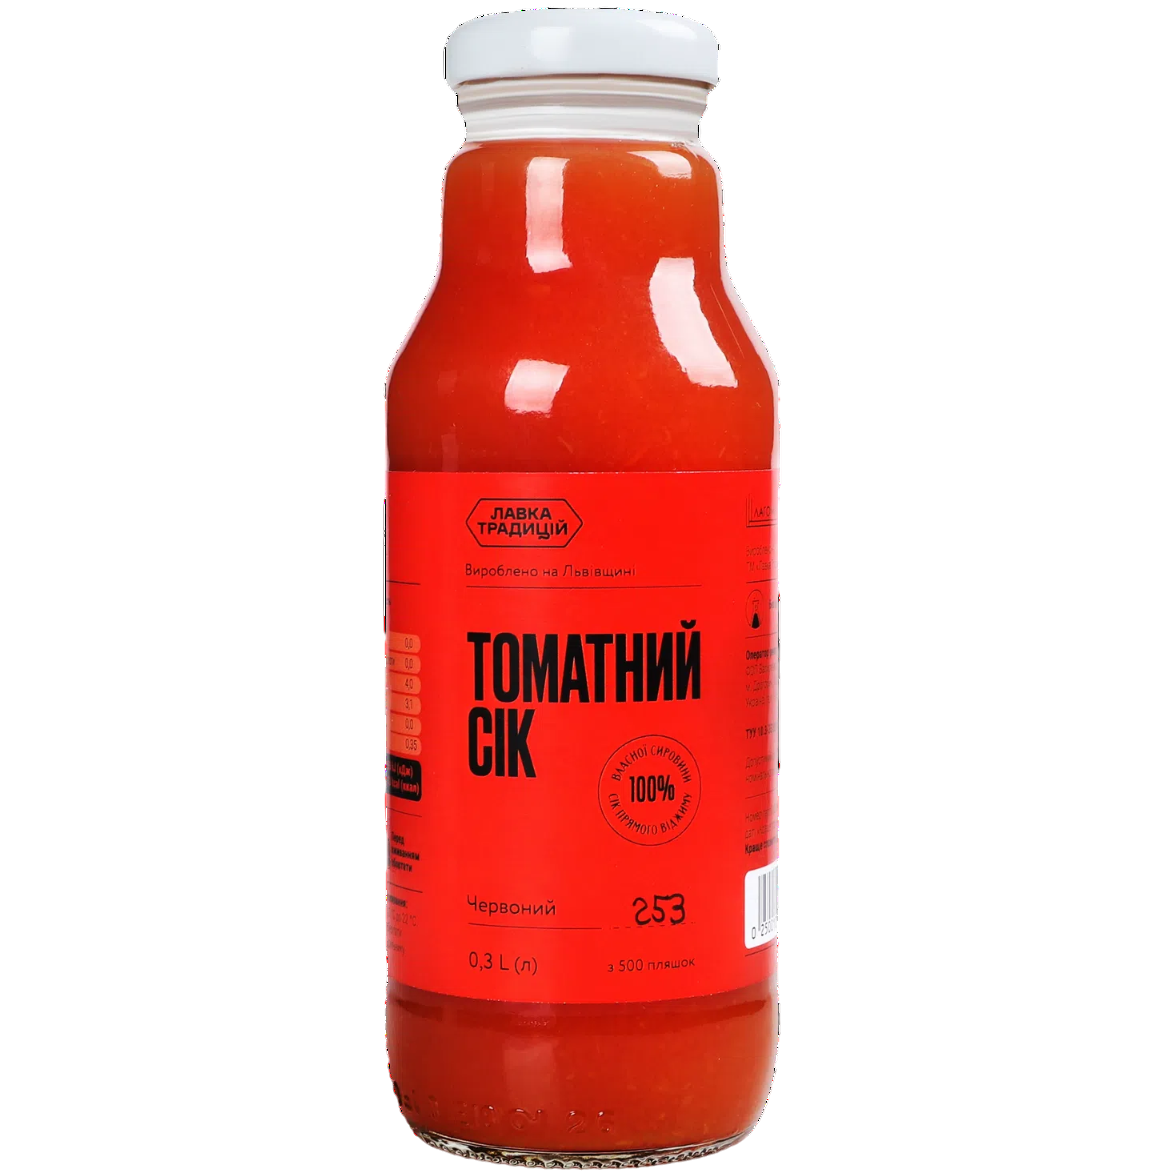 Сок Лавка традицій томатный красный 0.3 л - фото 1